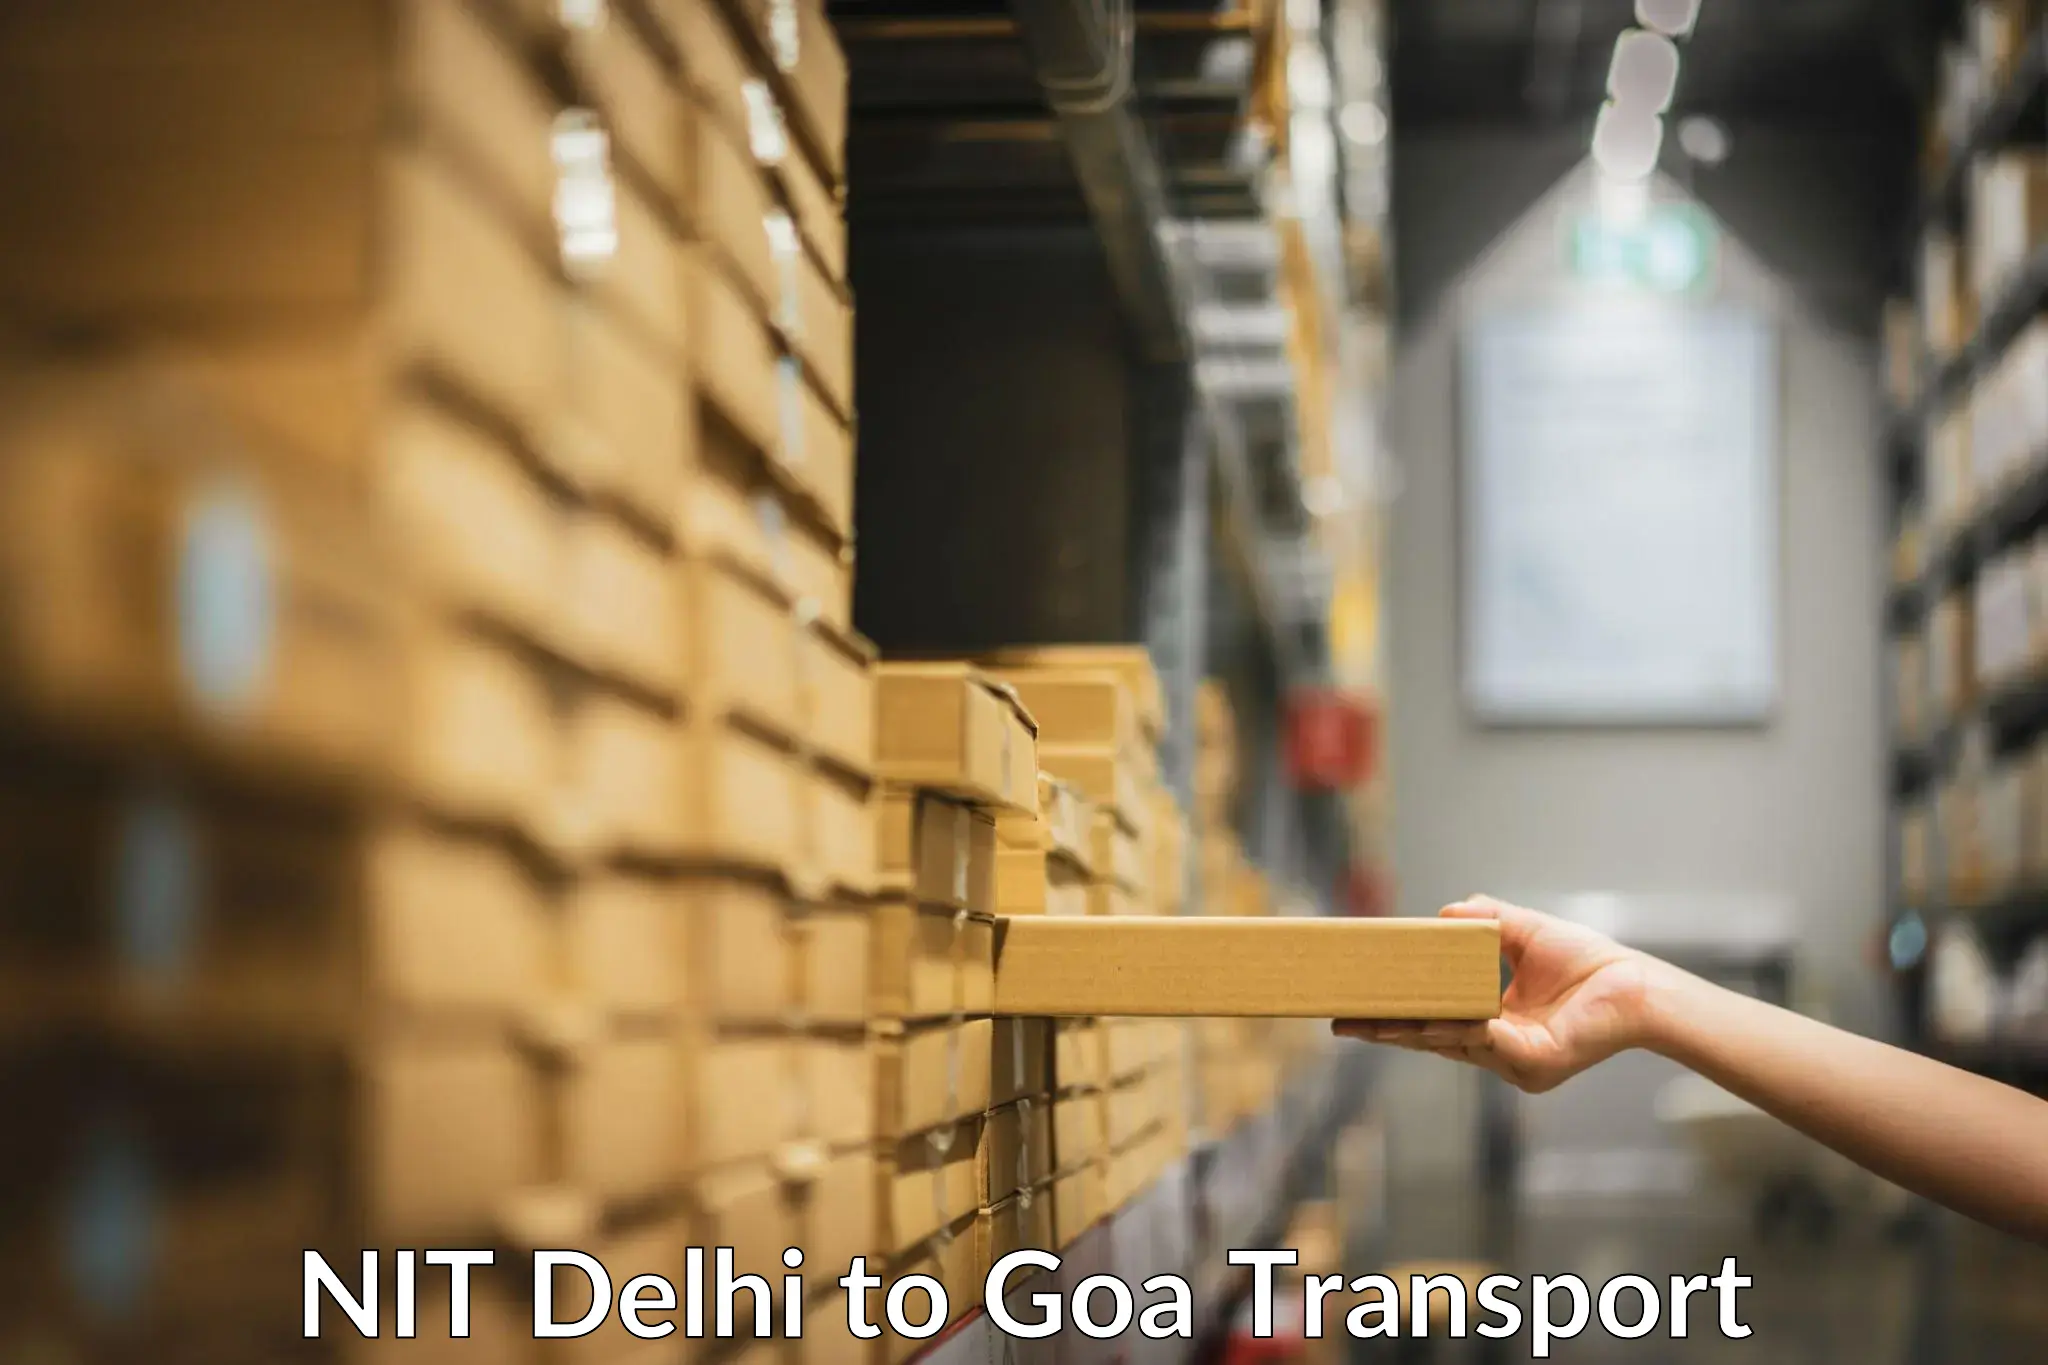 Cargo train transport services NIT Delhi to Mormugao Port